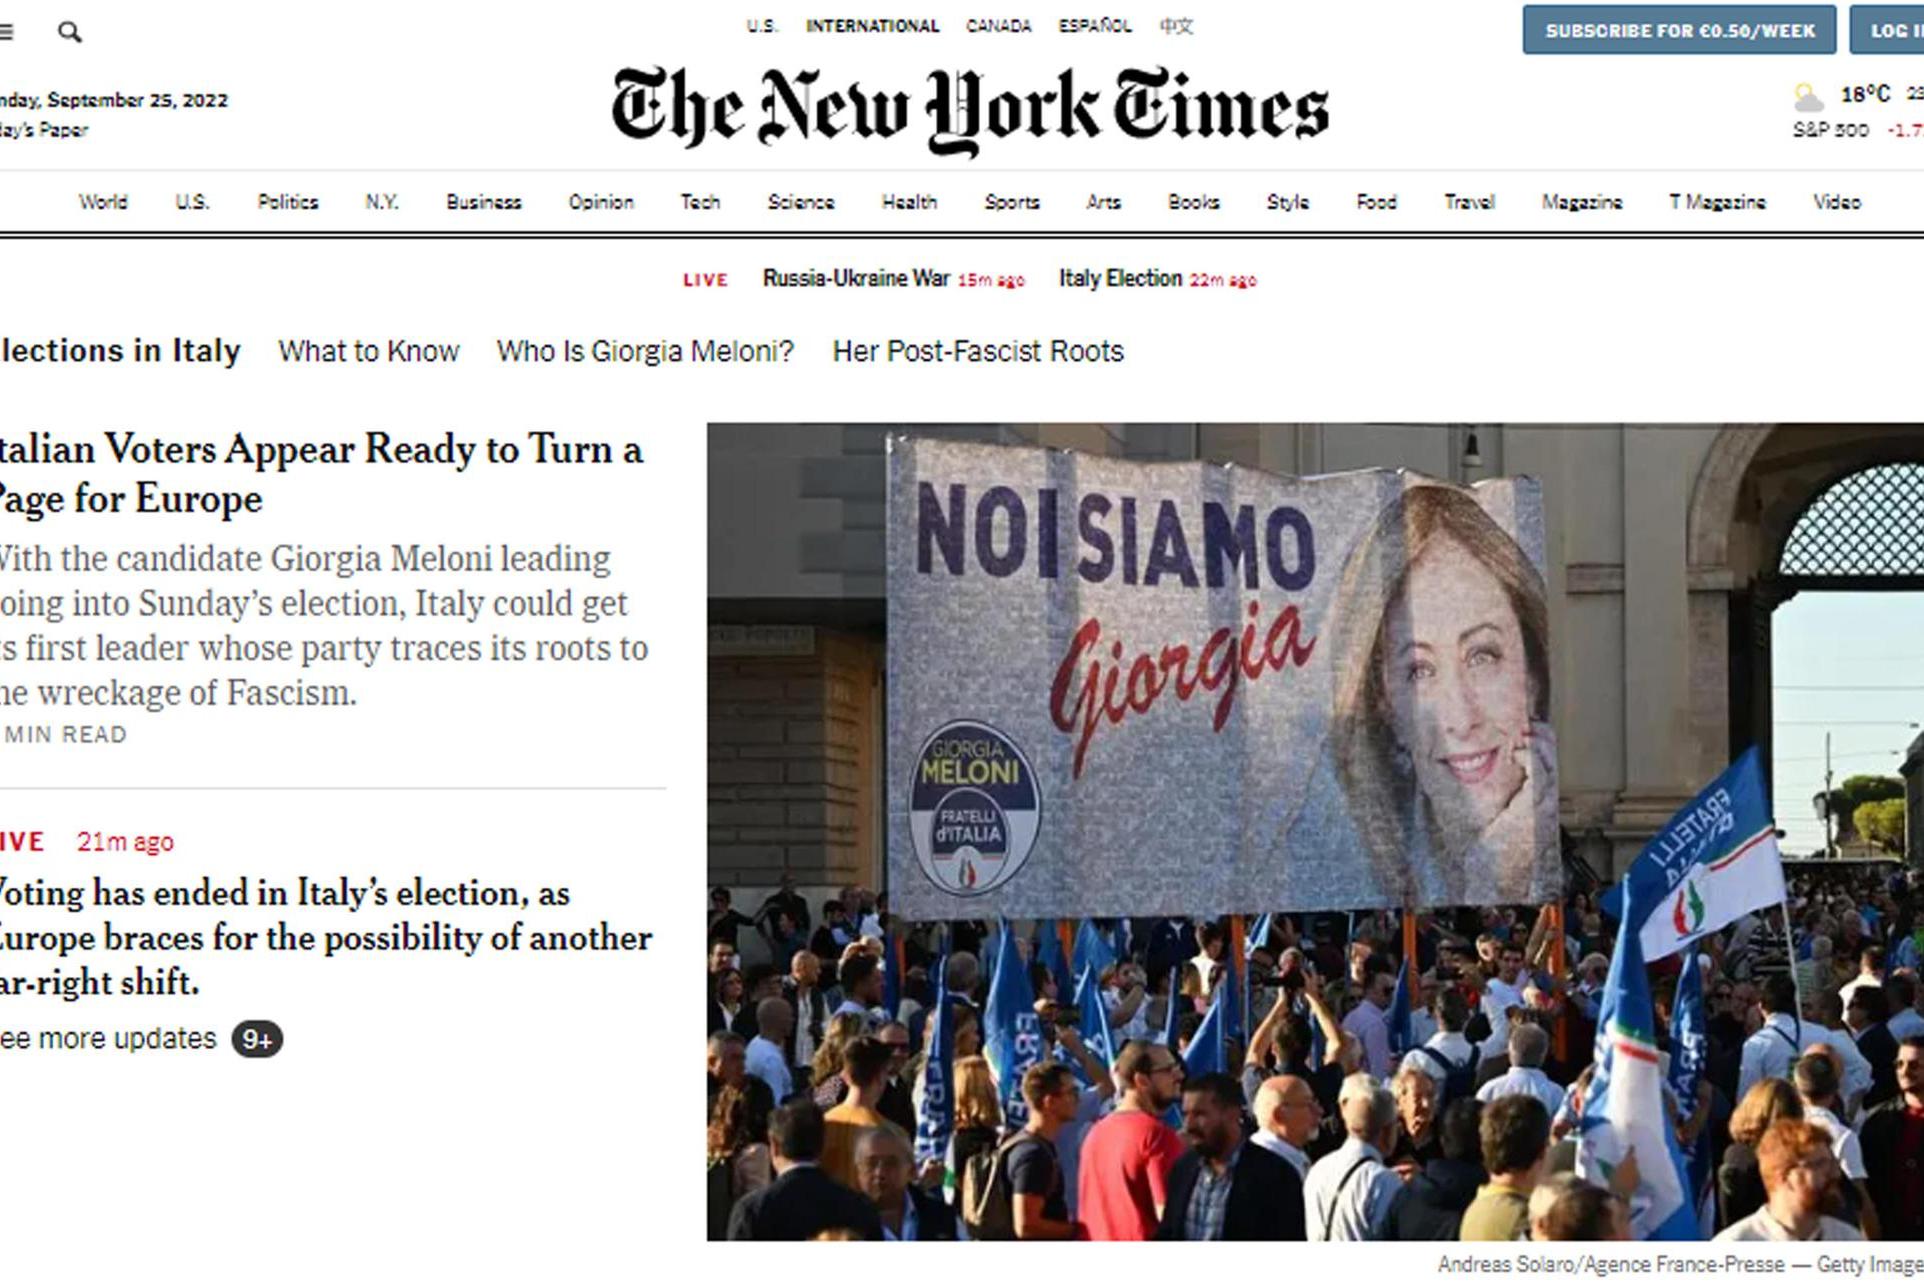 "Con i risultati del voto in Italia, l'Europa si prepara ad un altro spostamento a destra", scrive il New York Times